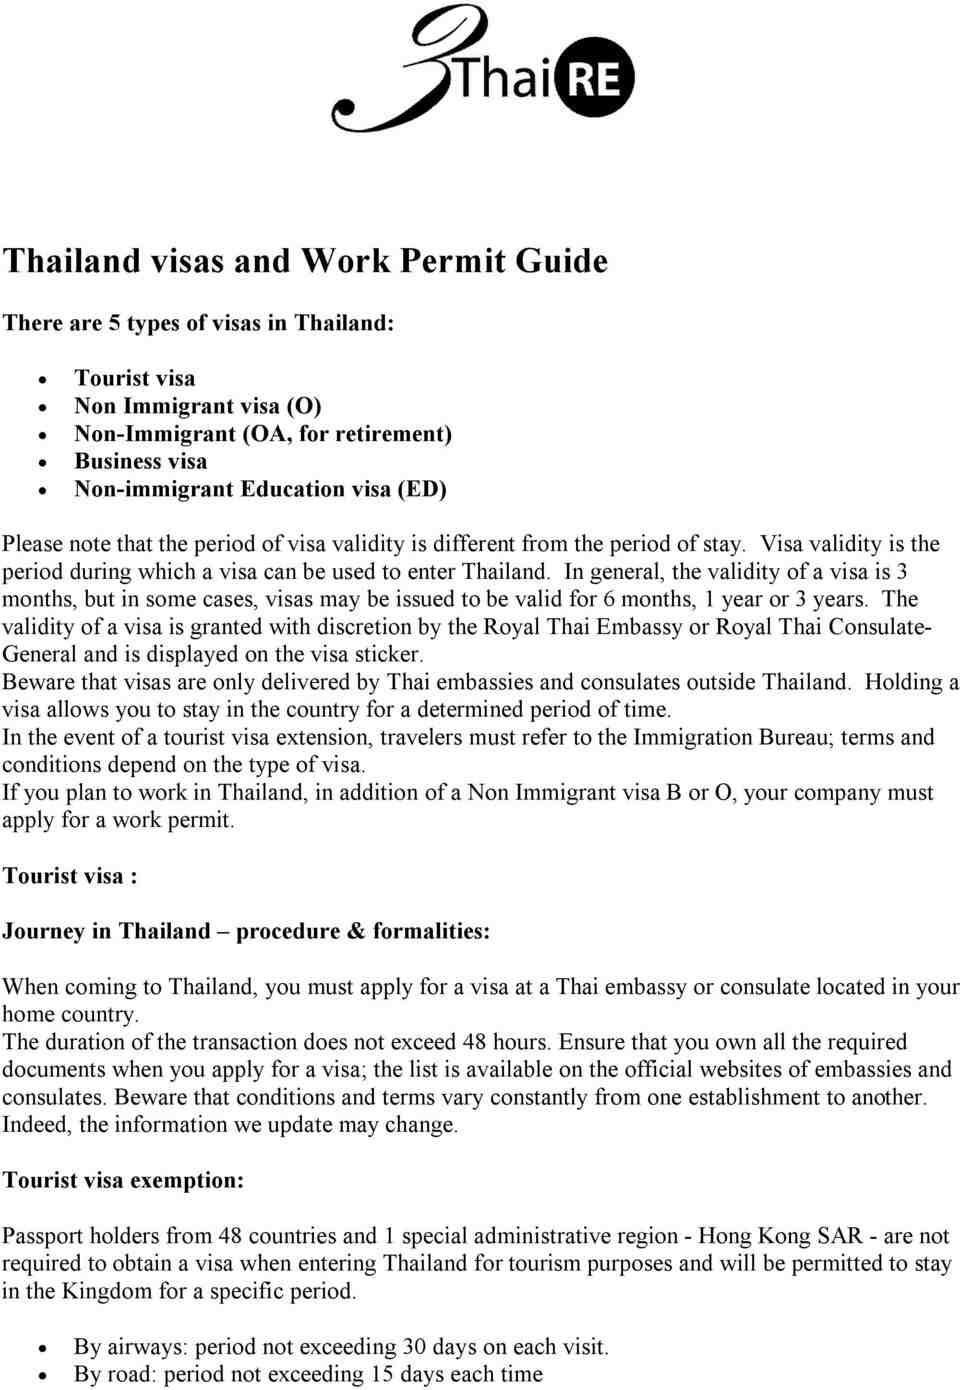 Apakah hidup mahal di Thailand?